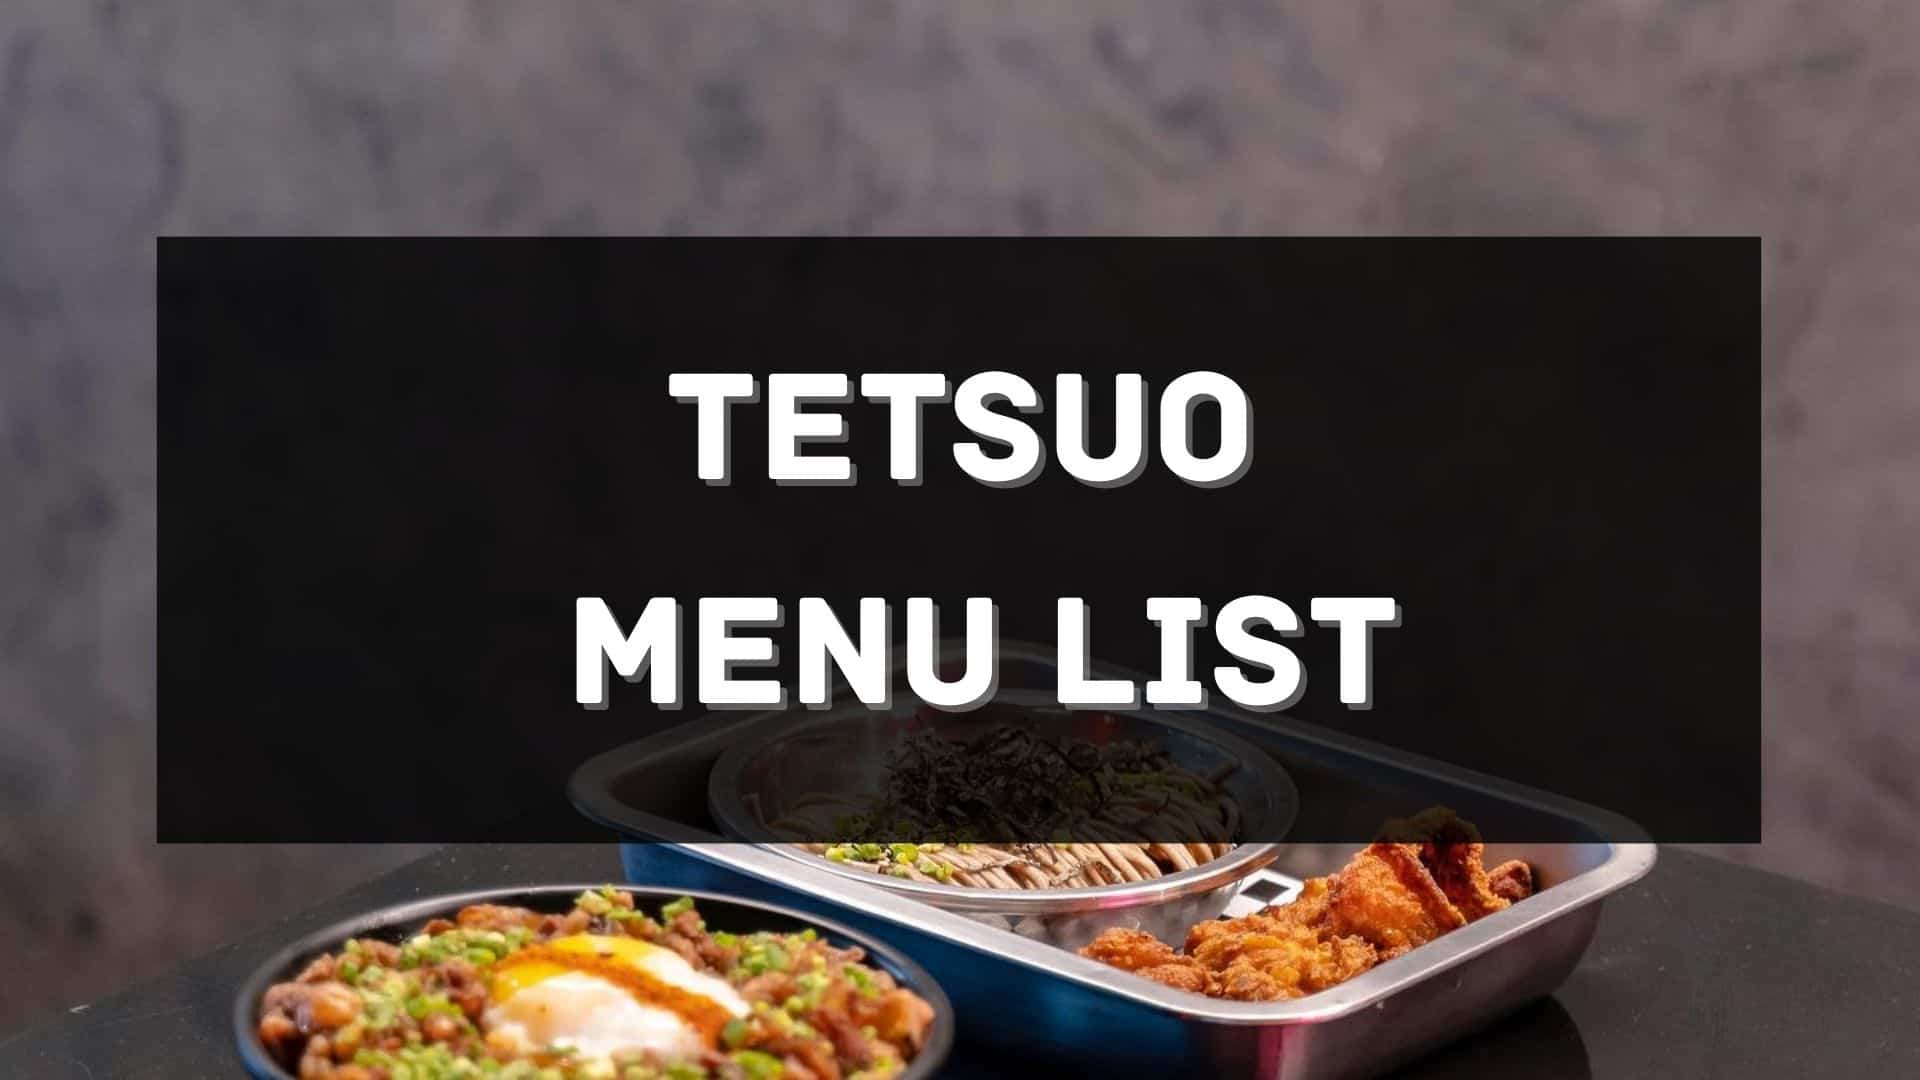 tetsuo menu prices philippines